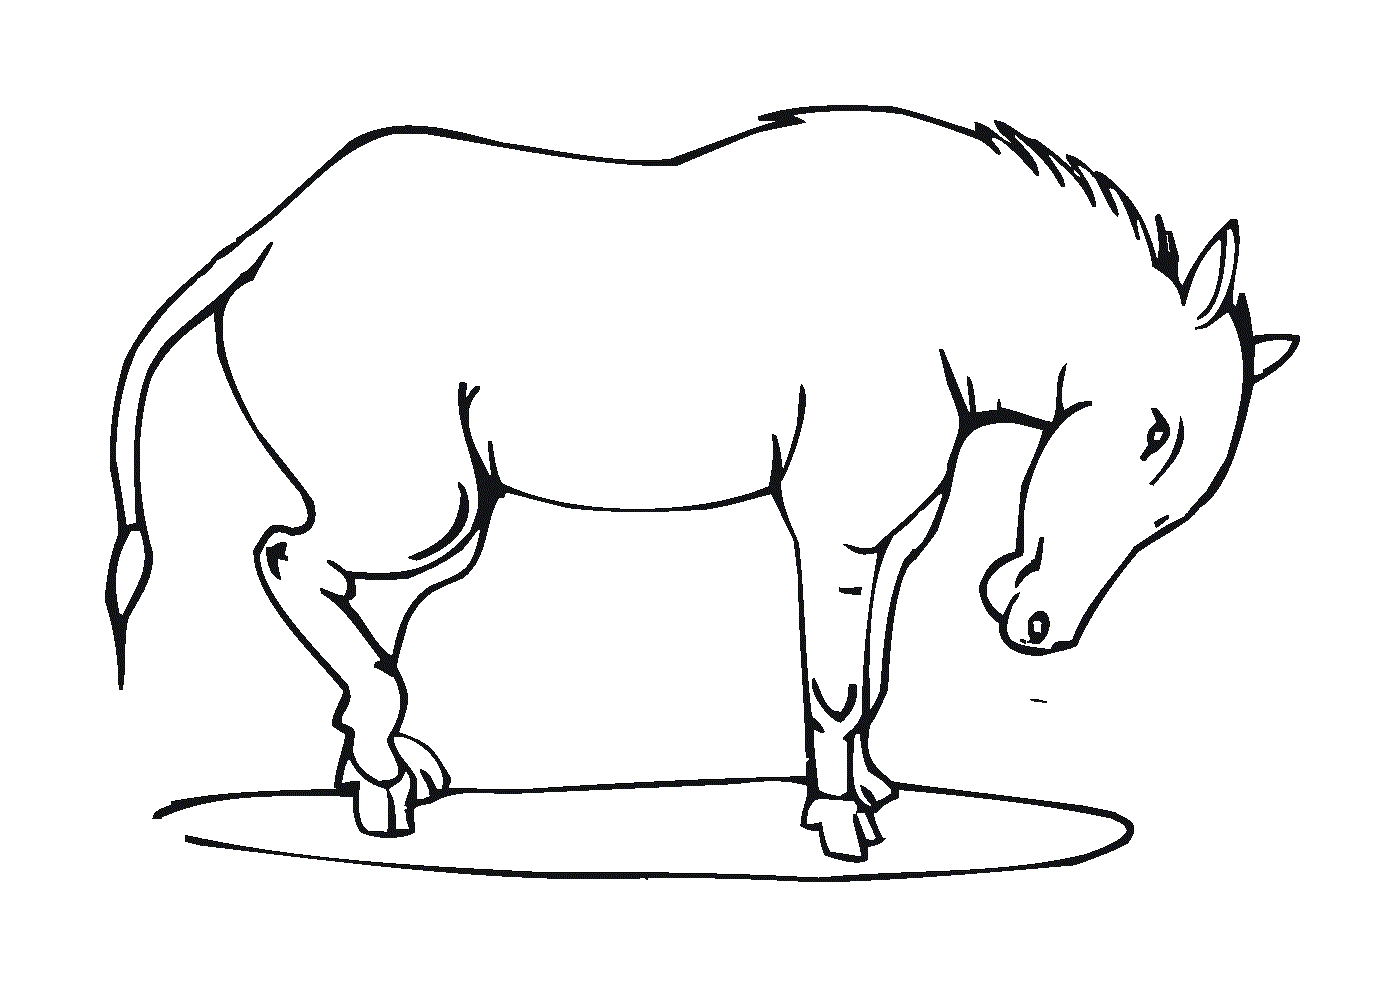  Лошадь стояла с опущенной головой 